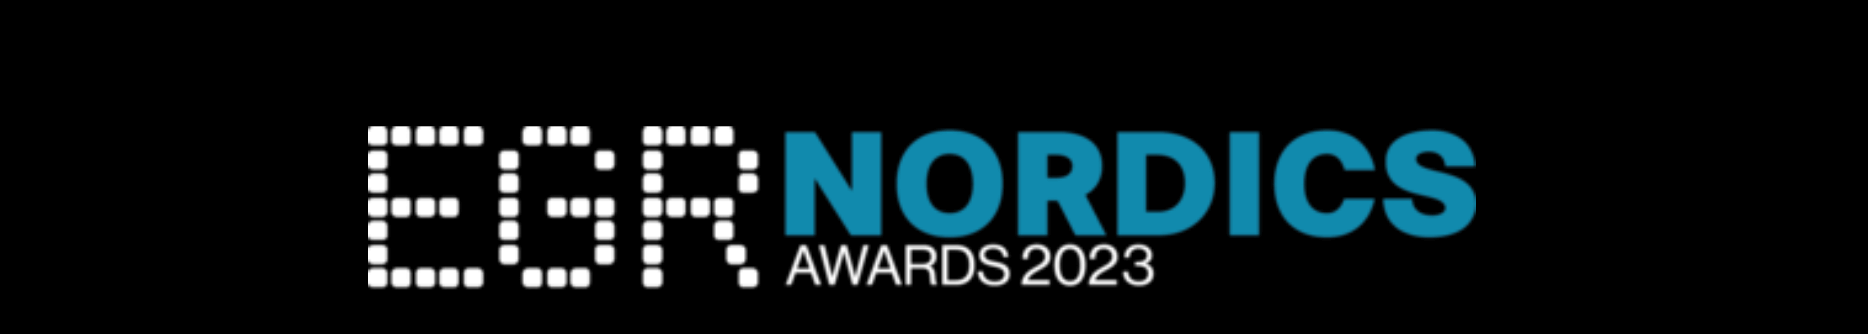 Premios nórdicos 2023 casino online